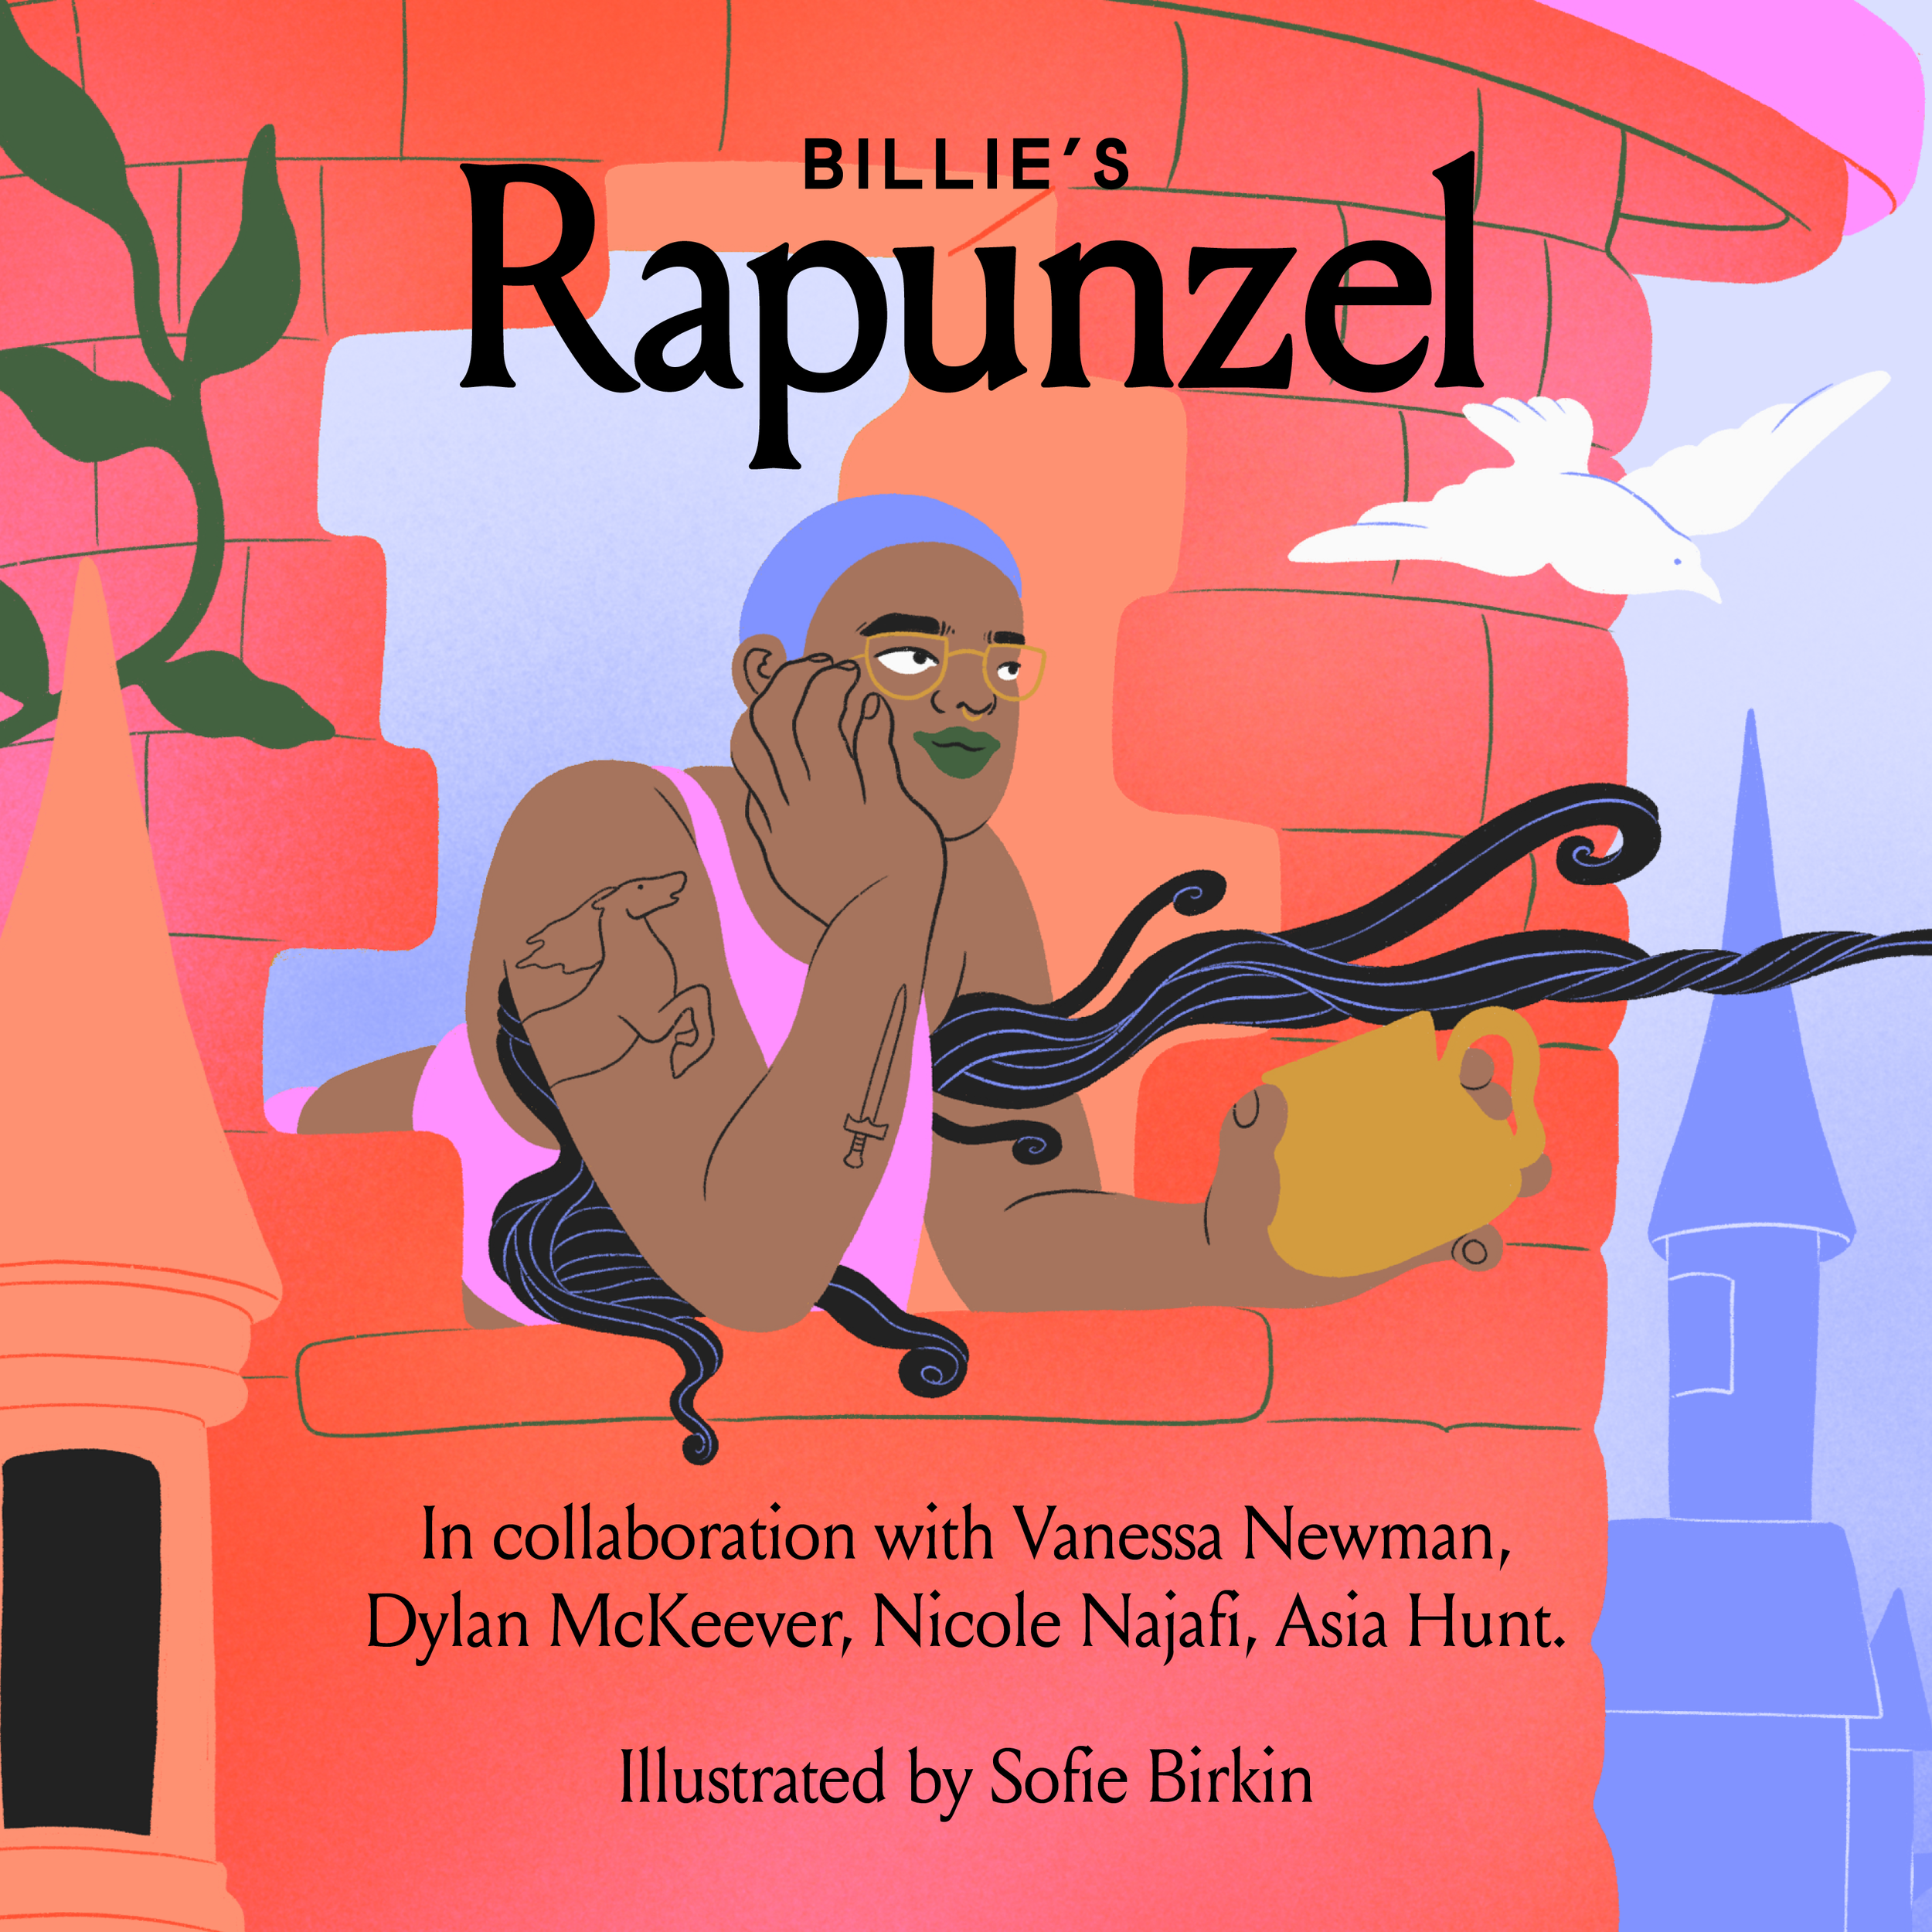 Billie_s Rapunzel 1.png